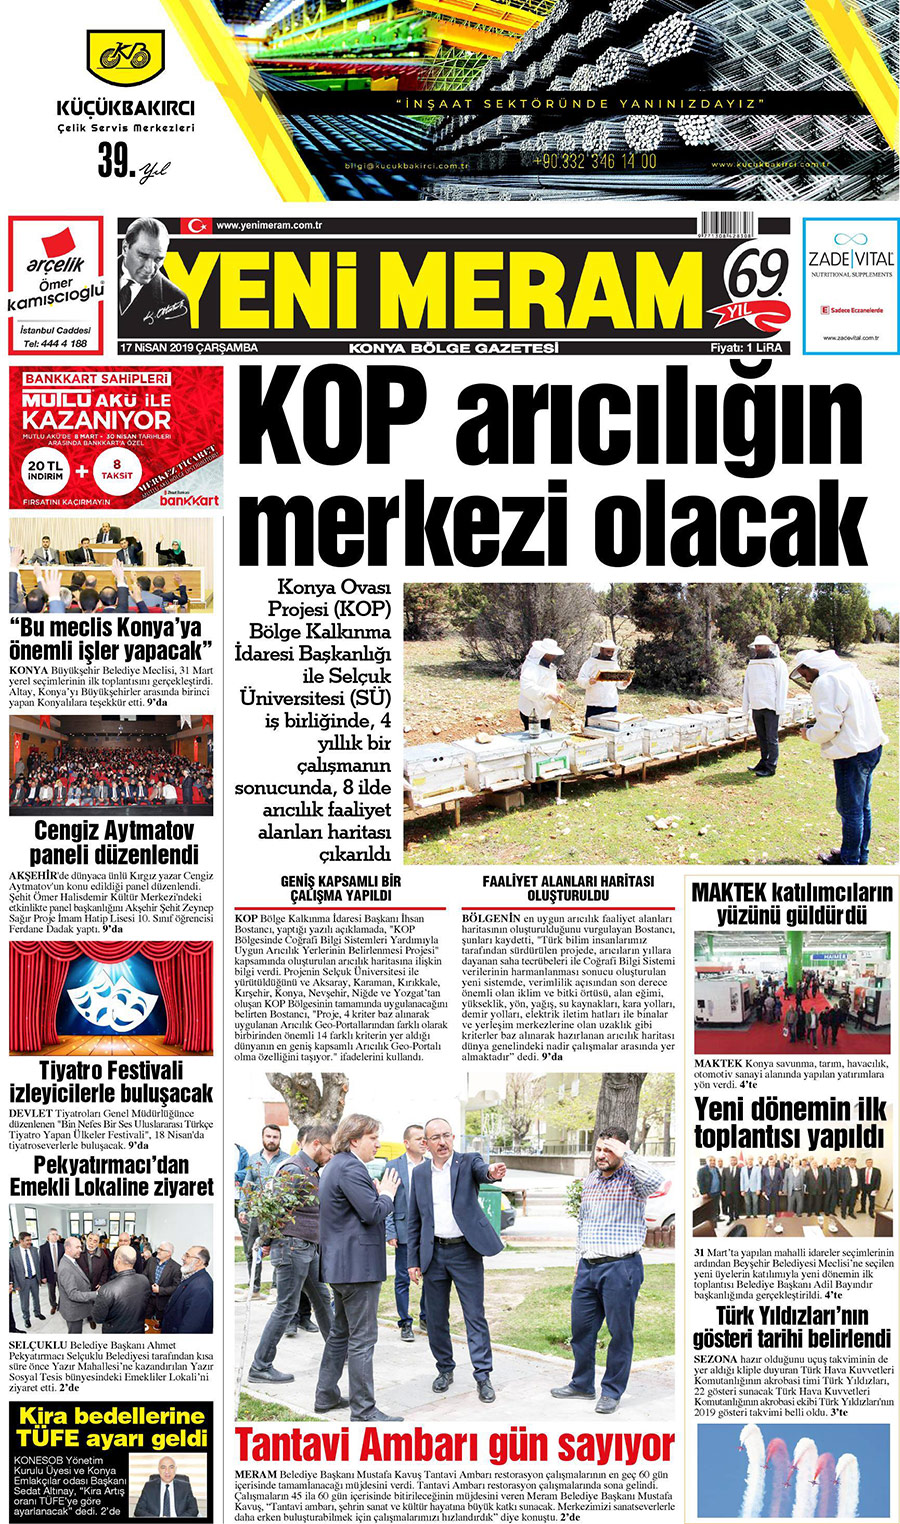 17 Nisan 2019 Yeni Meram Gazetesi